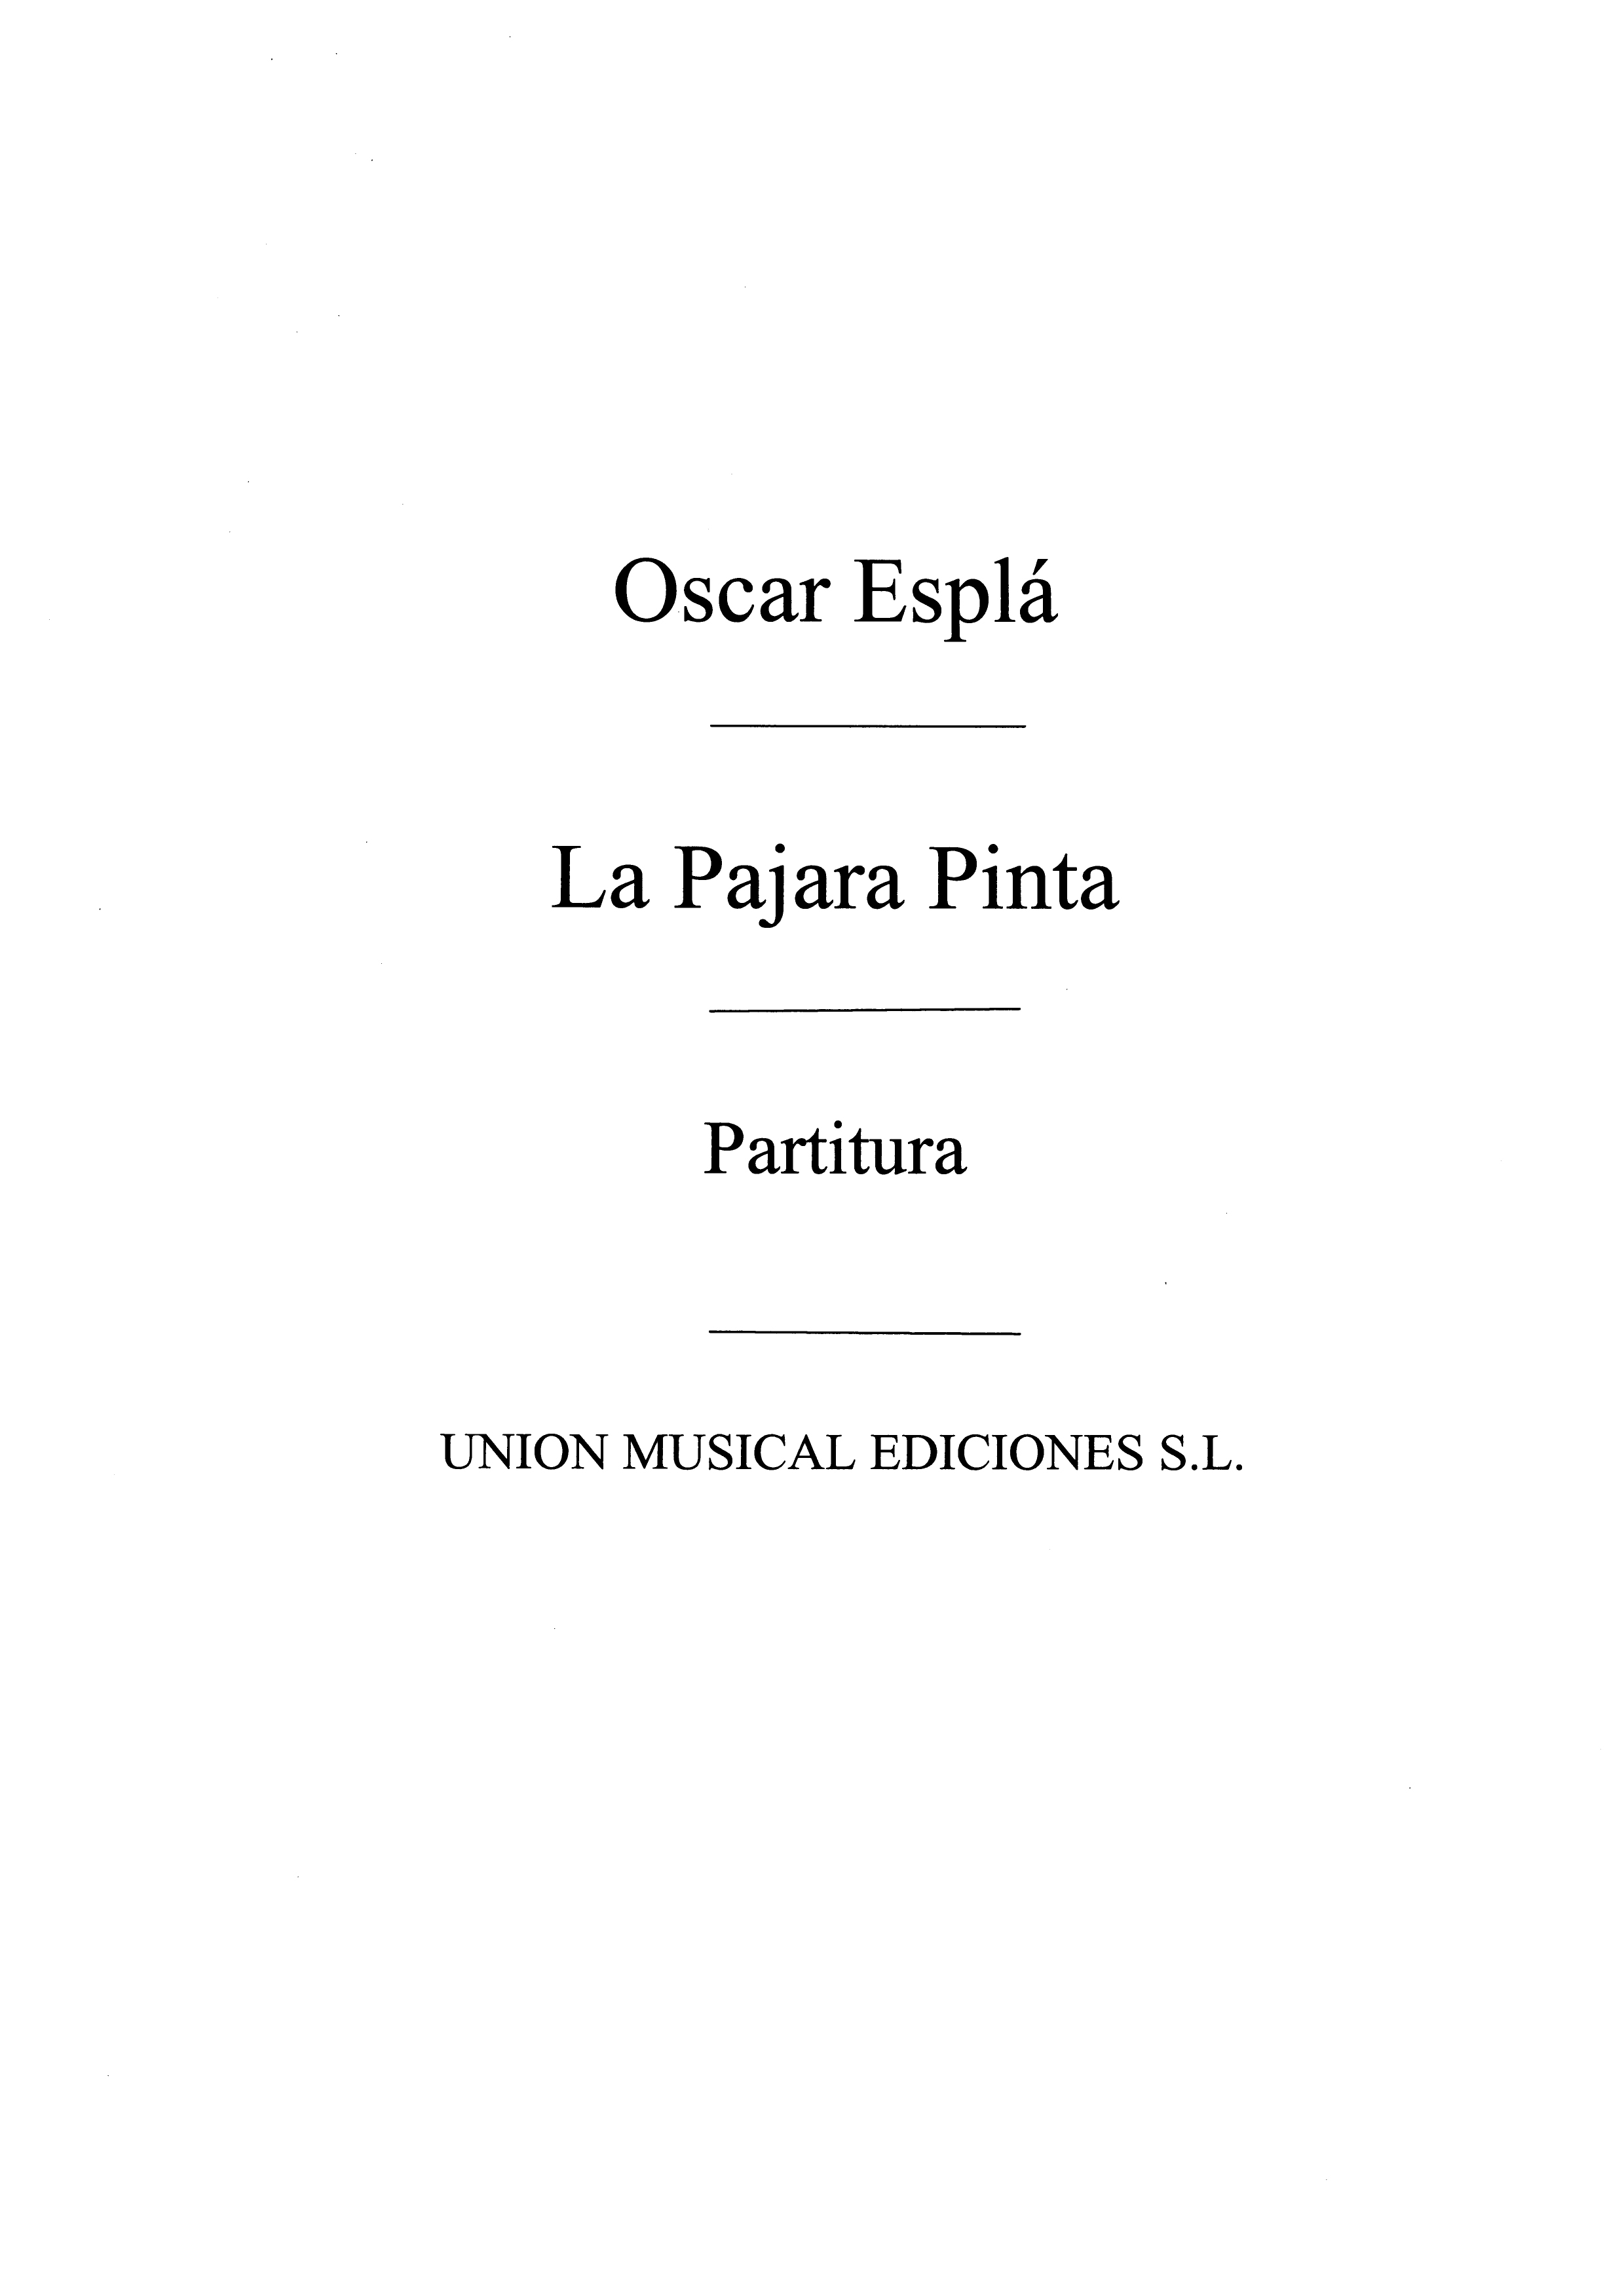 Espla: La Pajara Pinta - Score